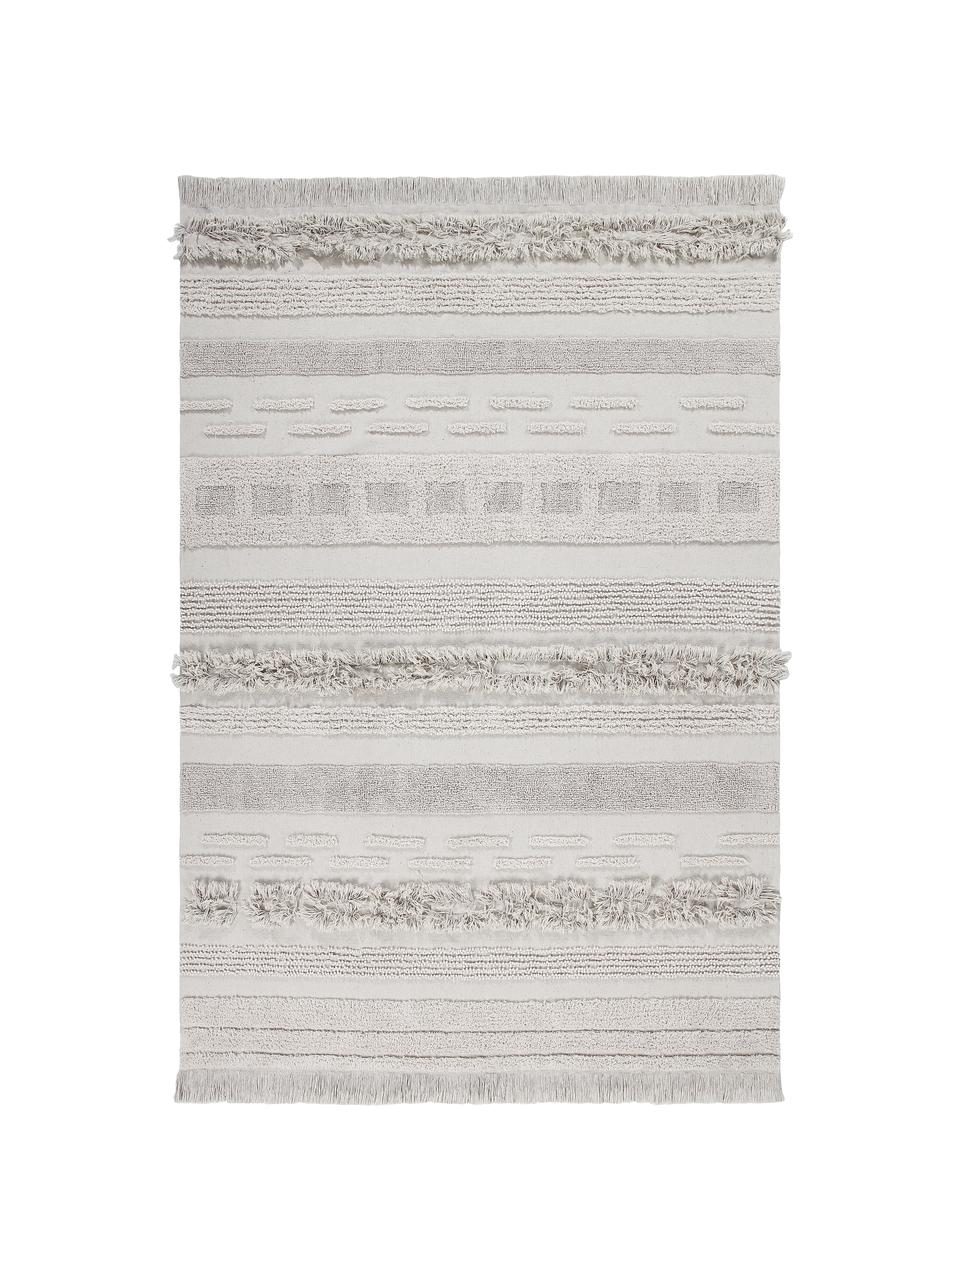 Tappeto in cotone effetto a rilievo Air, Retro: cotone riciclato, Beige, Larg. 140 x Lung. 200 cm (taglia S)